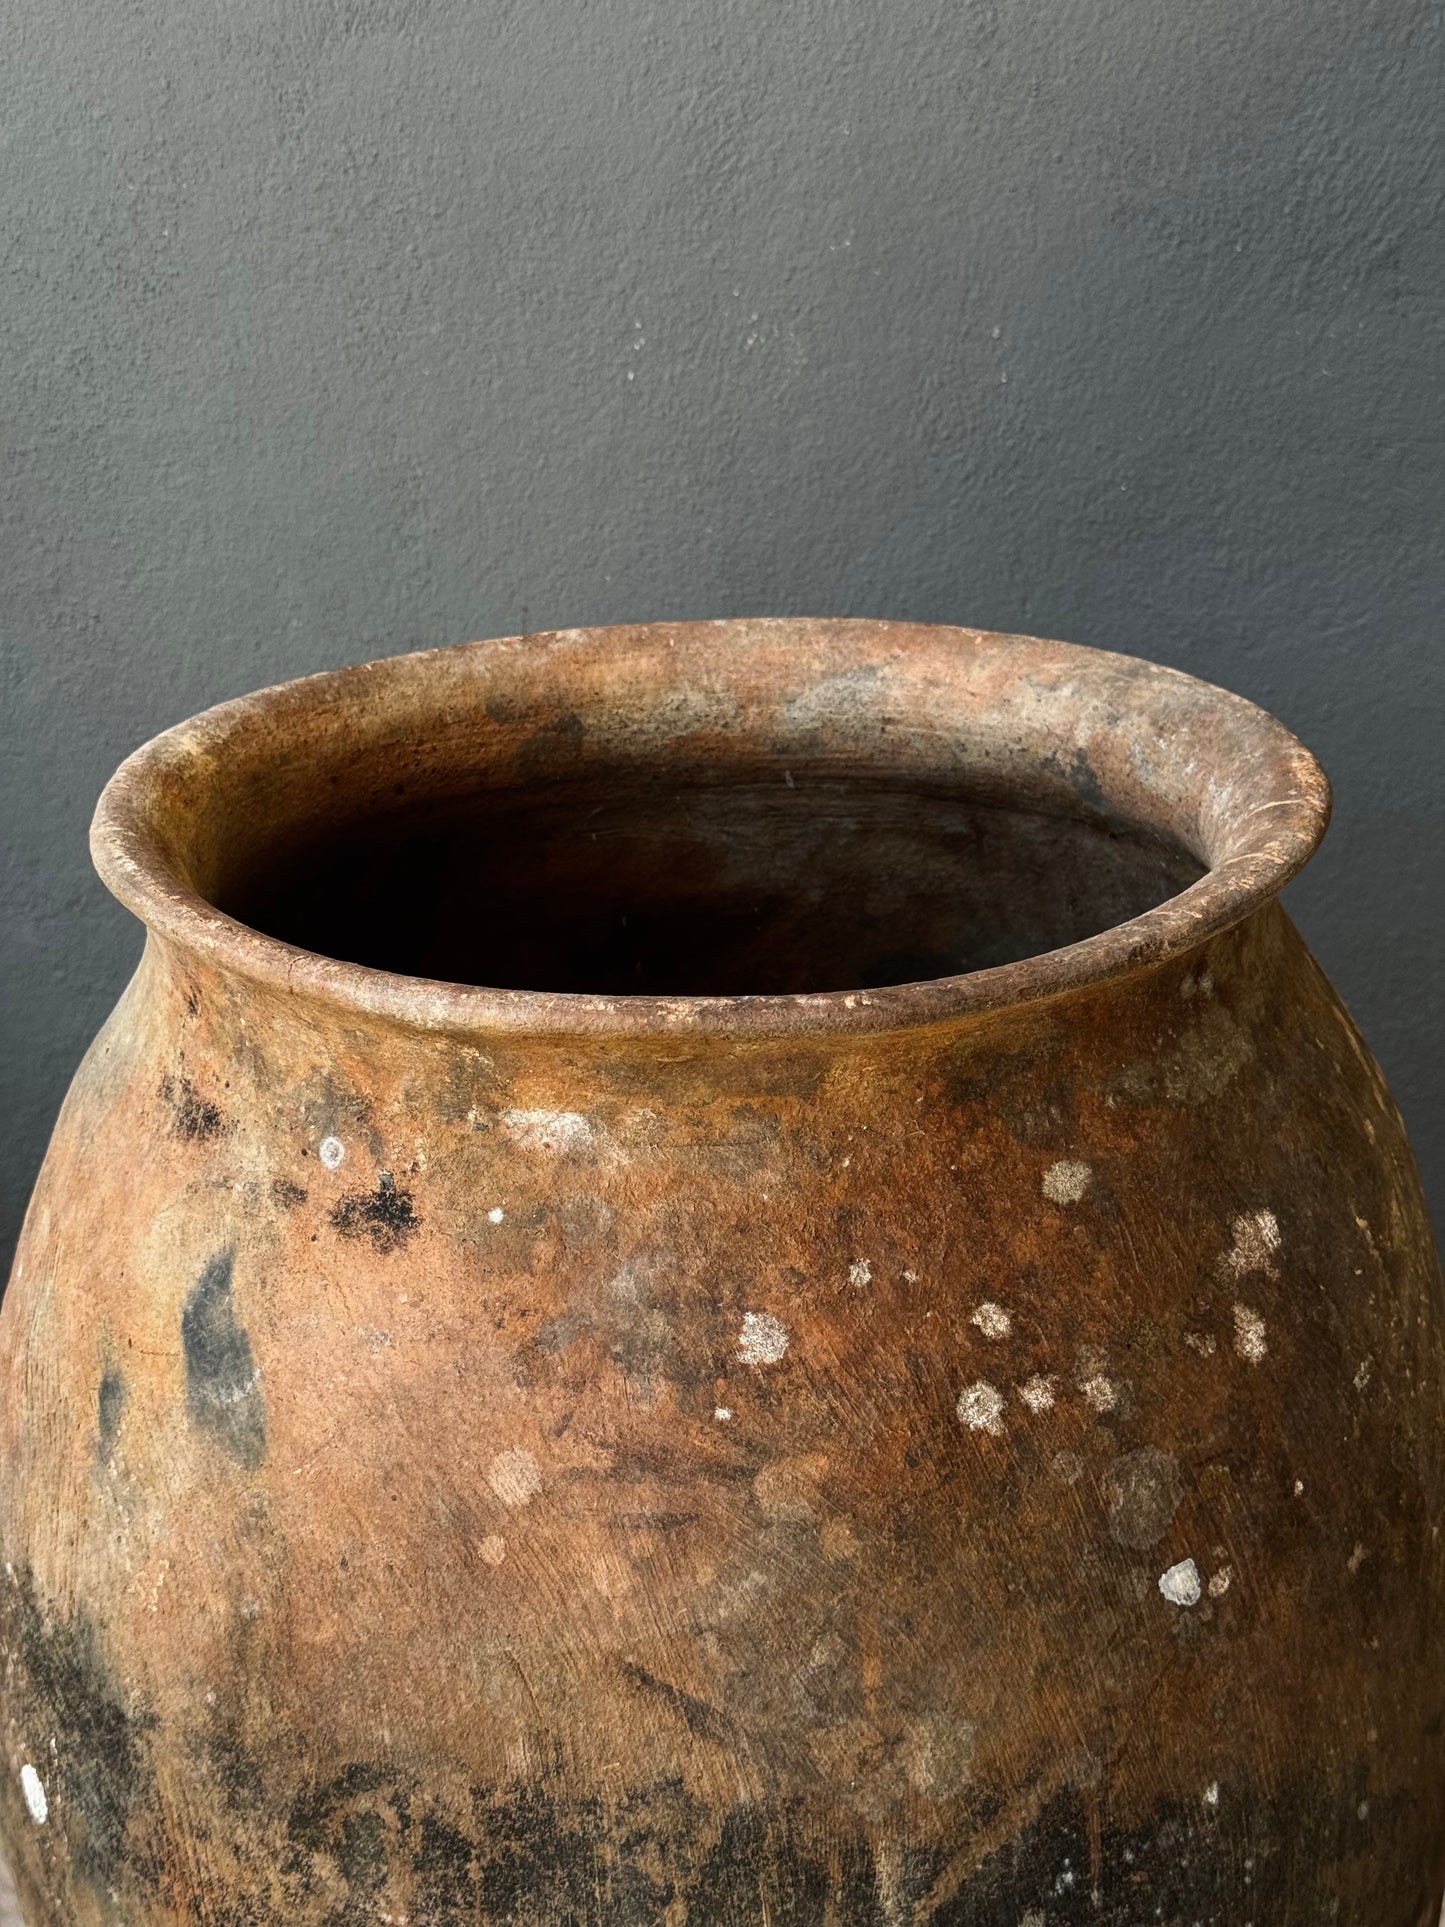 Large Water Pot From The Sierra Mixe Region Of Oaxaca, Early 1900’s | Tinaja Antigua De La Sierra Mixe De Oaxaca